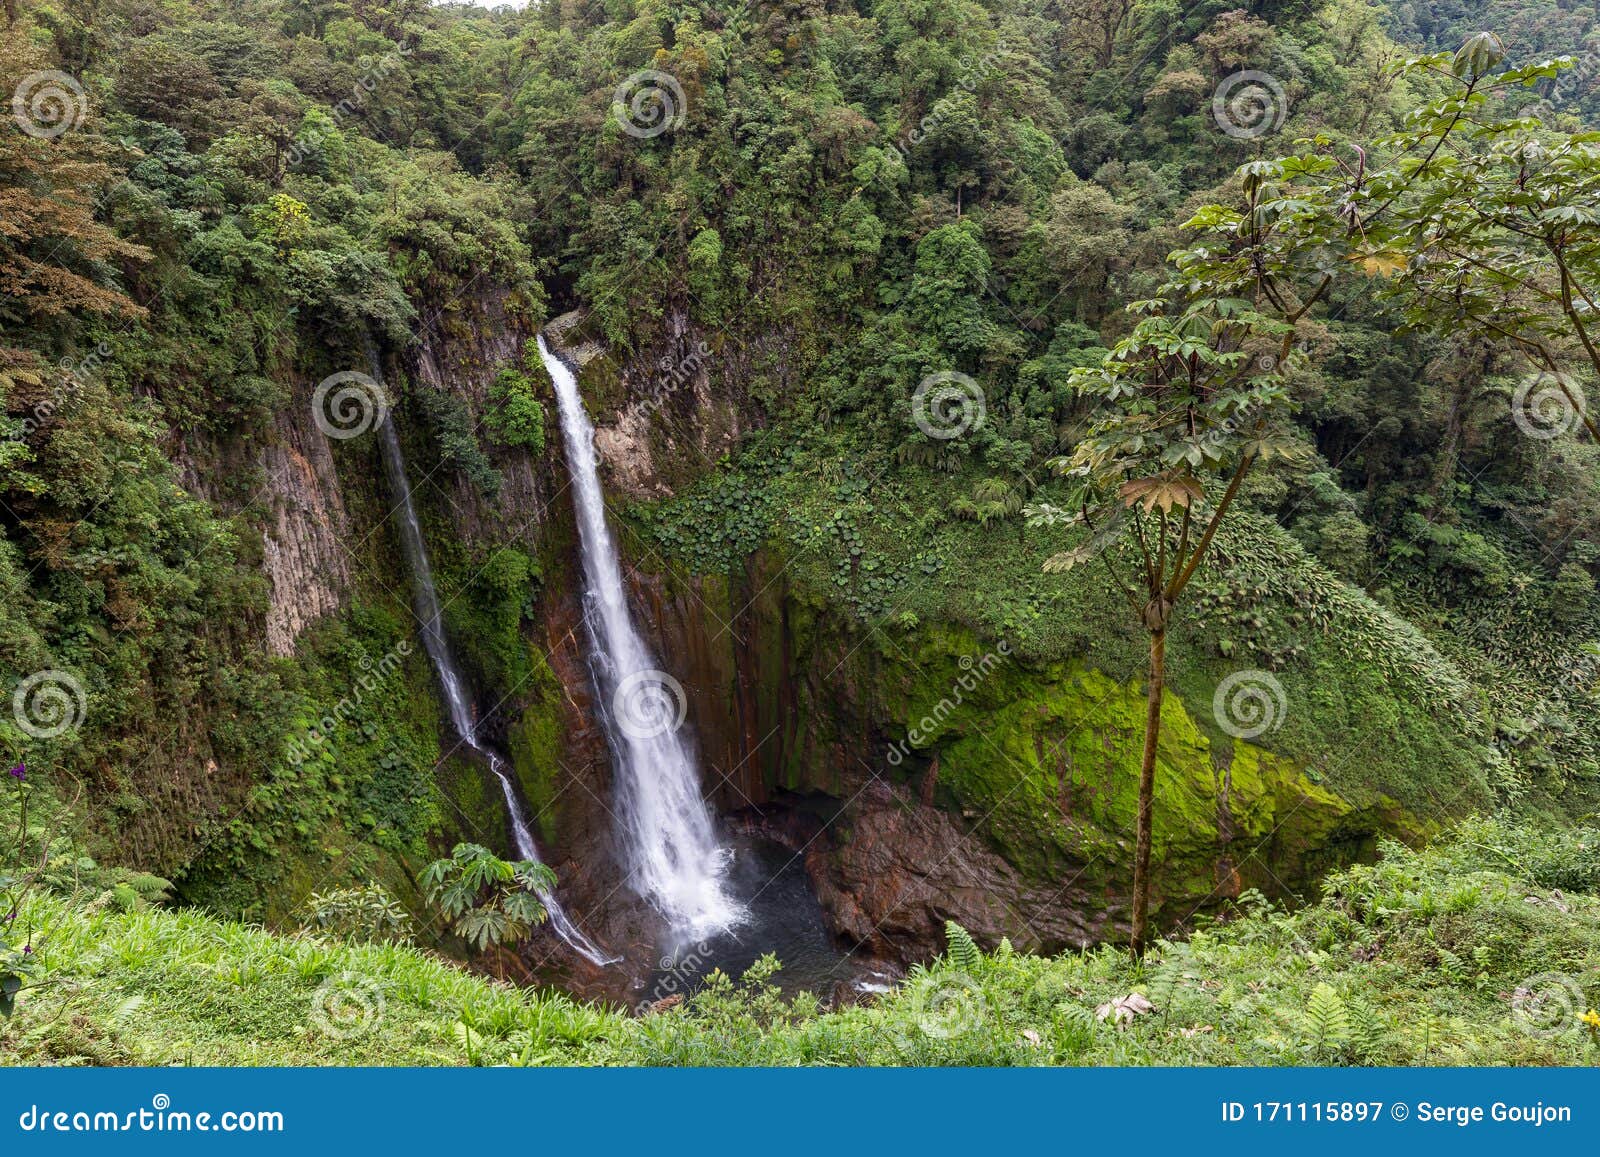 catarata del toro waterfall near poas volcano, costa rica